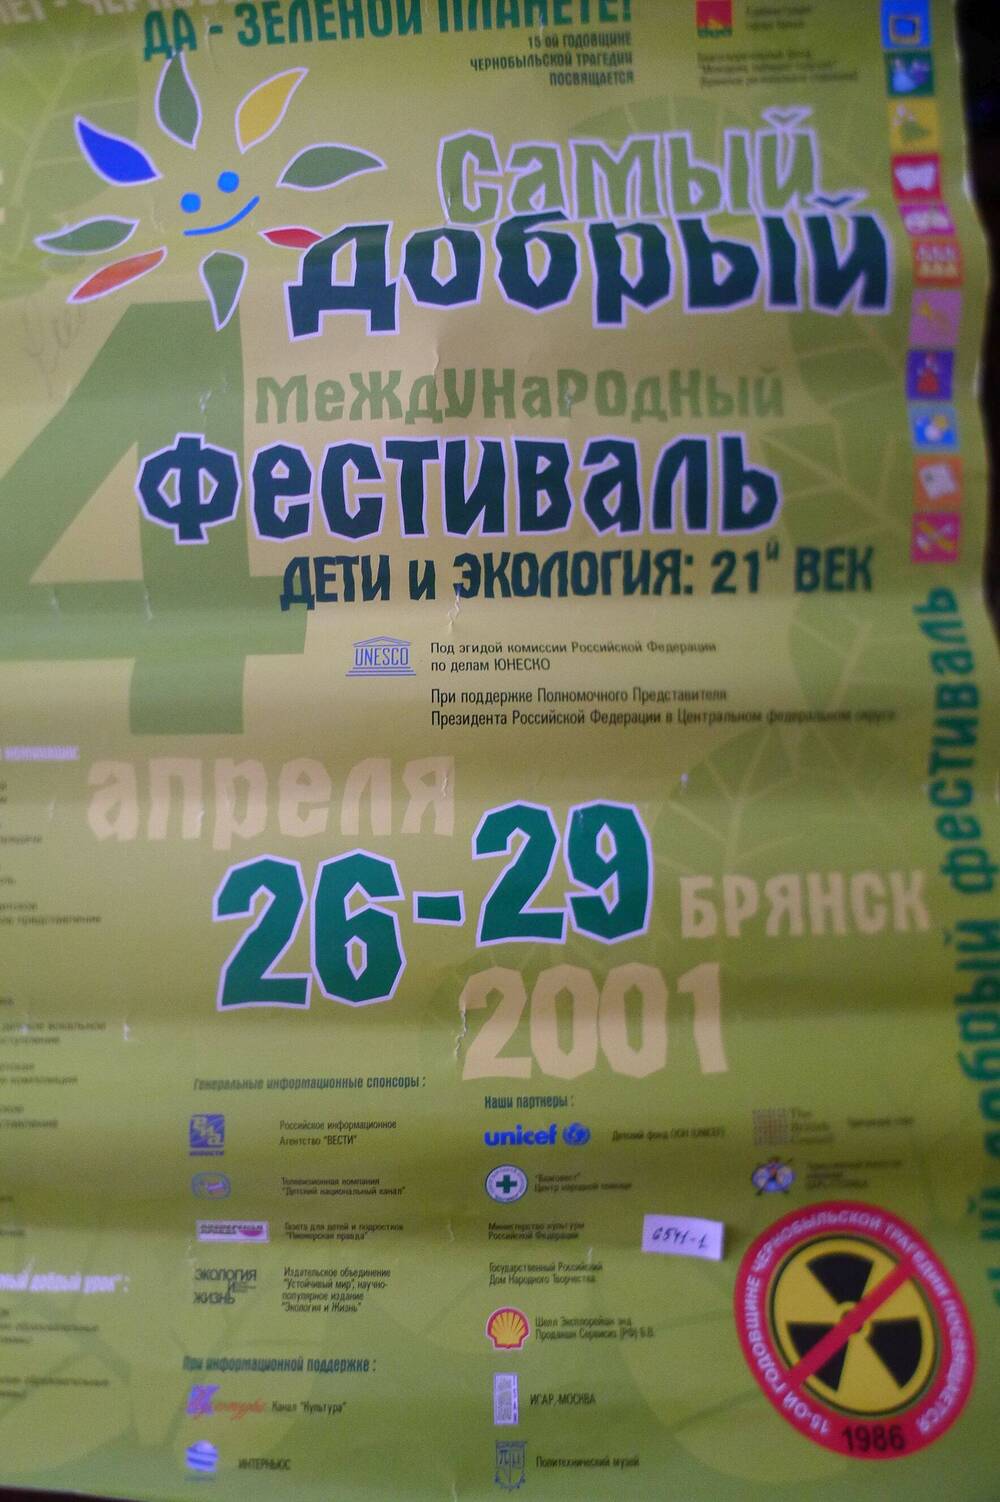 Реклама  Самый добрый и международный фестиваль.  дети и экология :21 век2001 г.